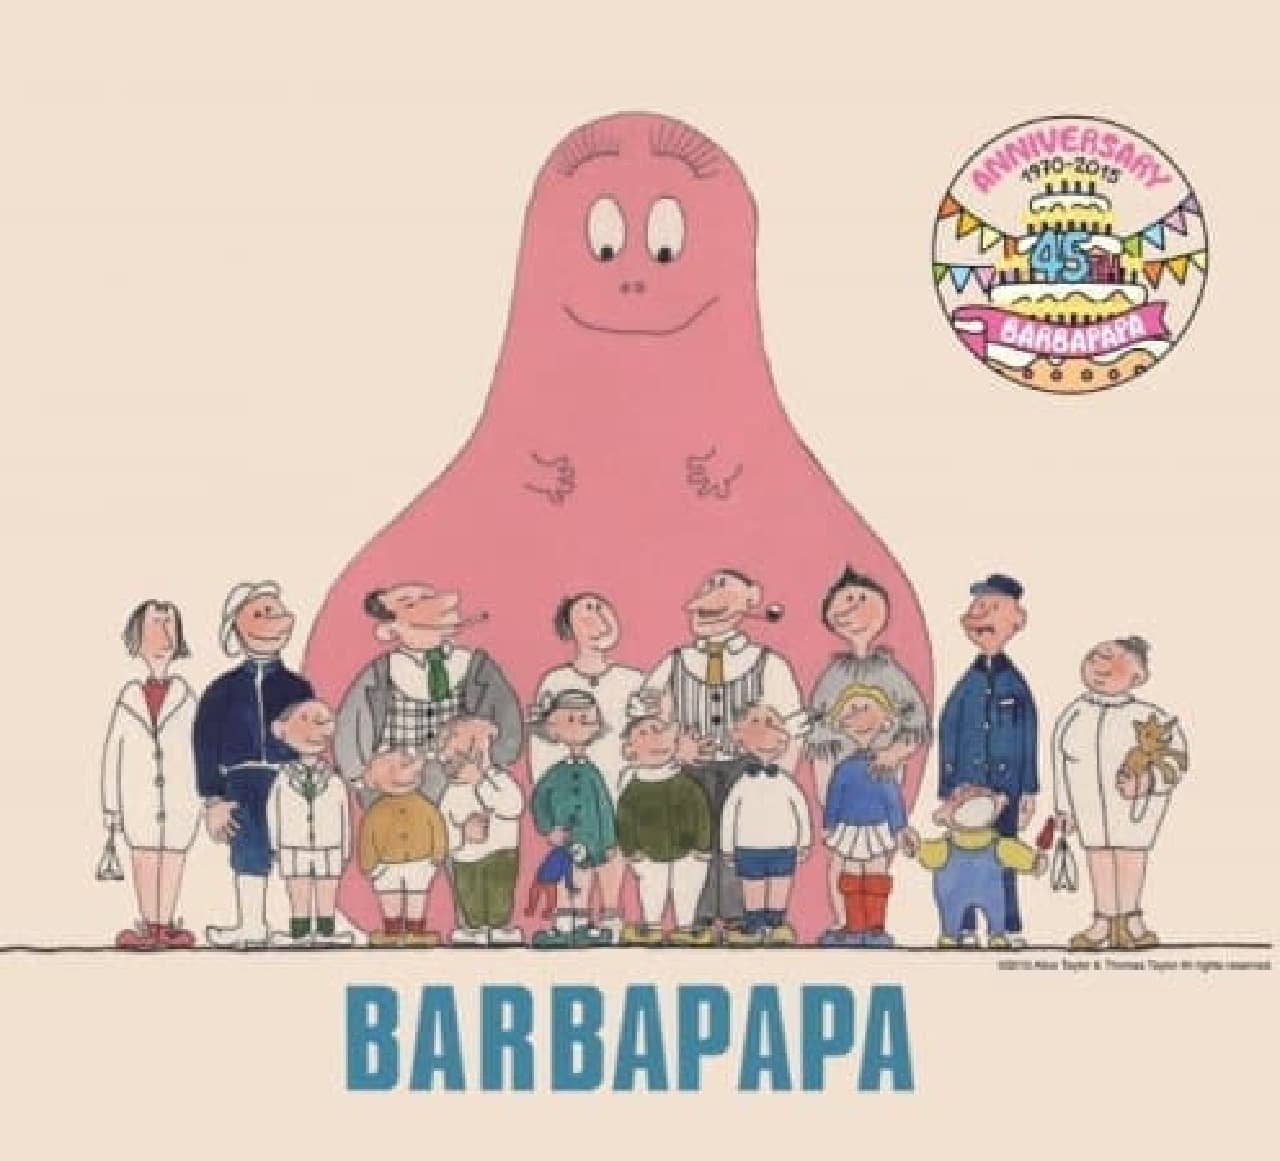 Congratulations to Barbapapa!